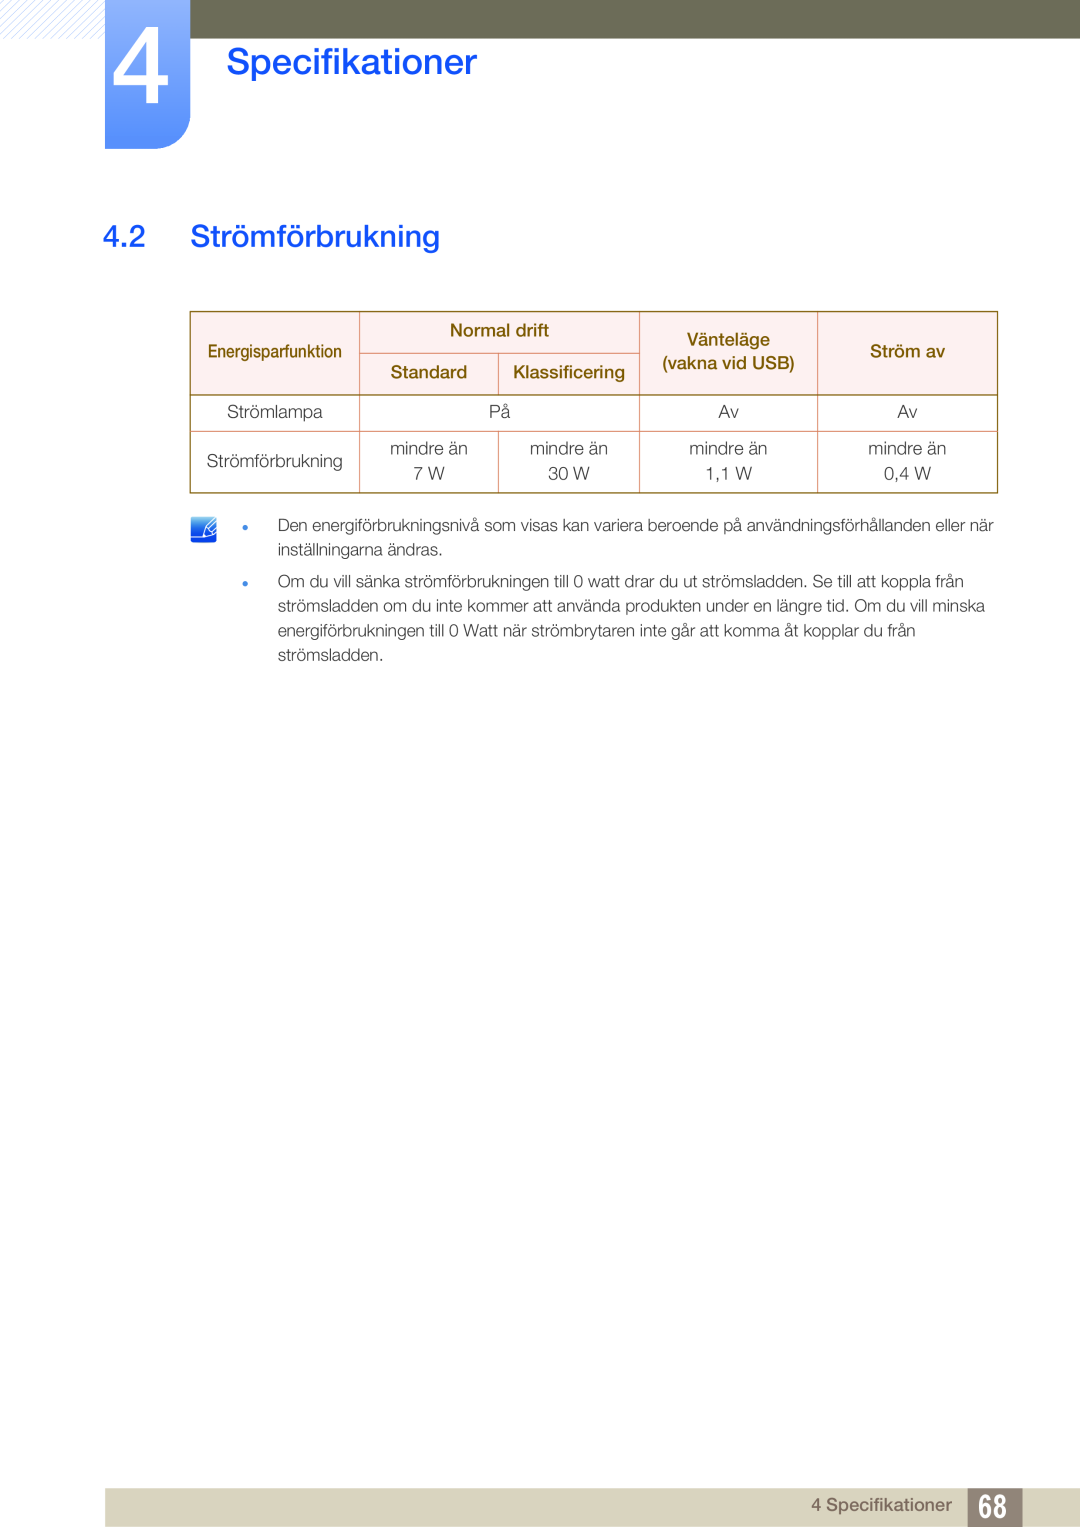 Samsung LF-NXN2N/EN 4.2 Strömförbrukning, Specifikationer, Energisparfunktion, Normal drift, Vänteläge, Ström av, Standard 